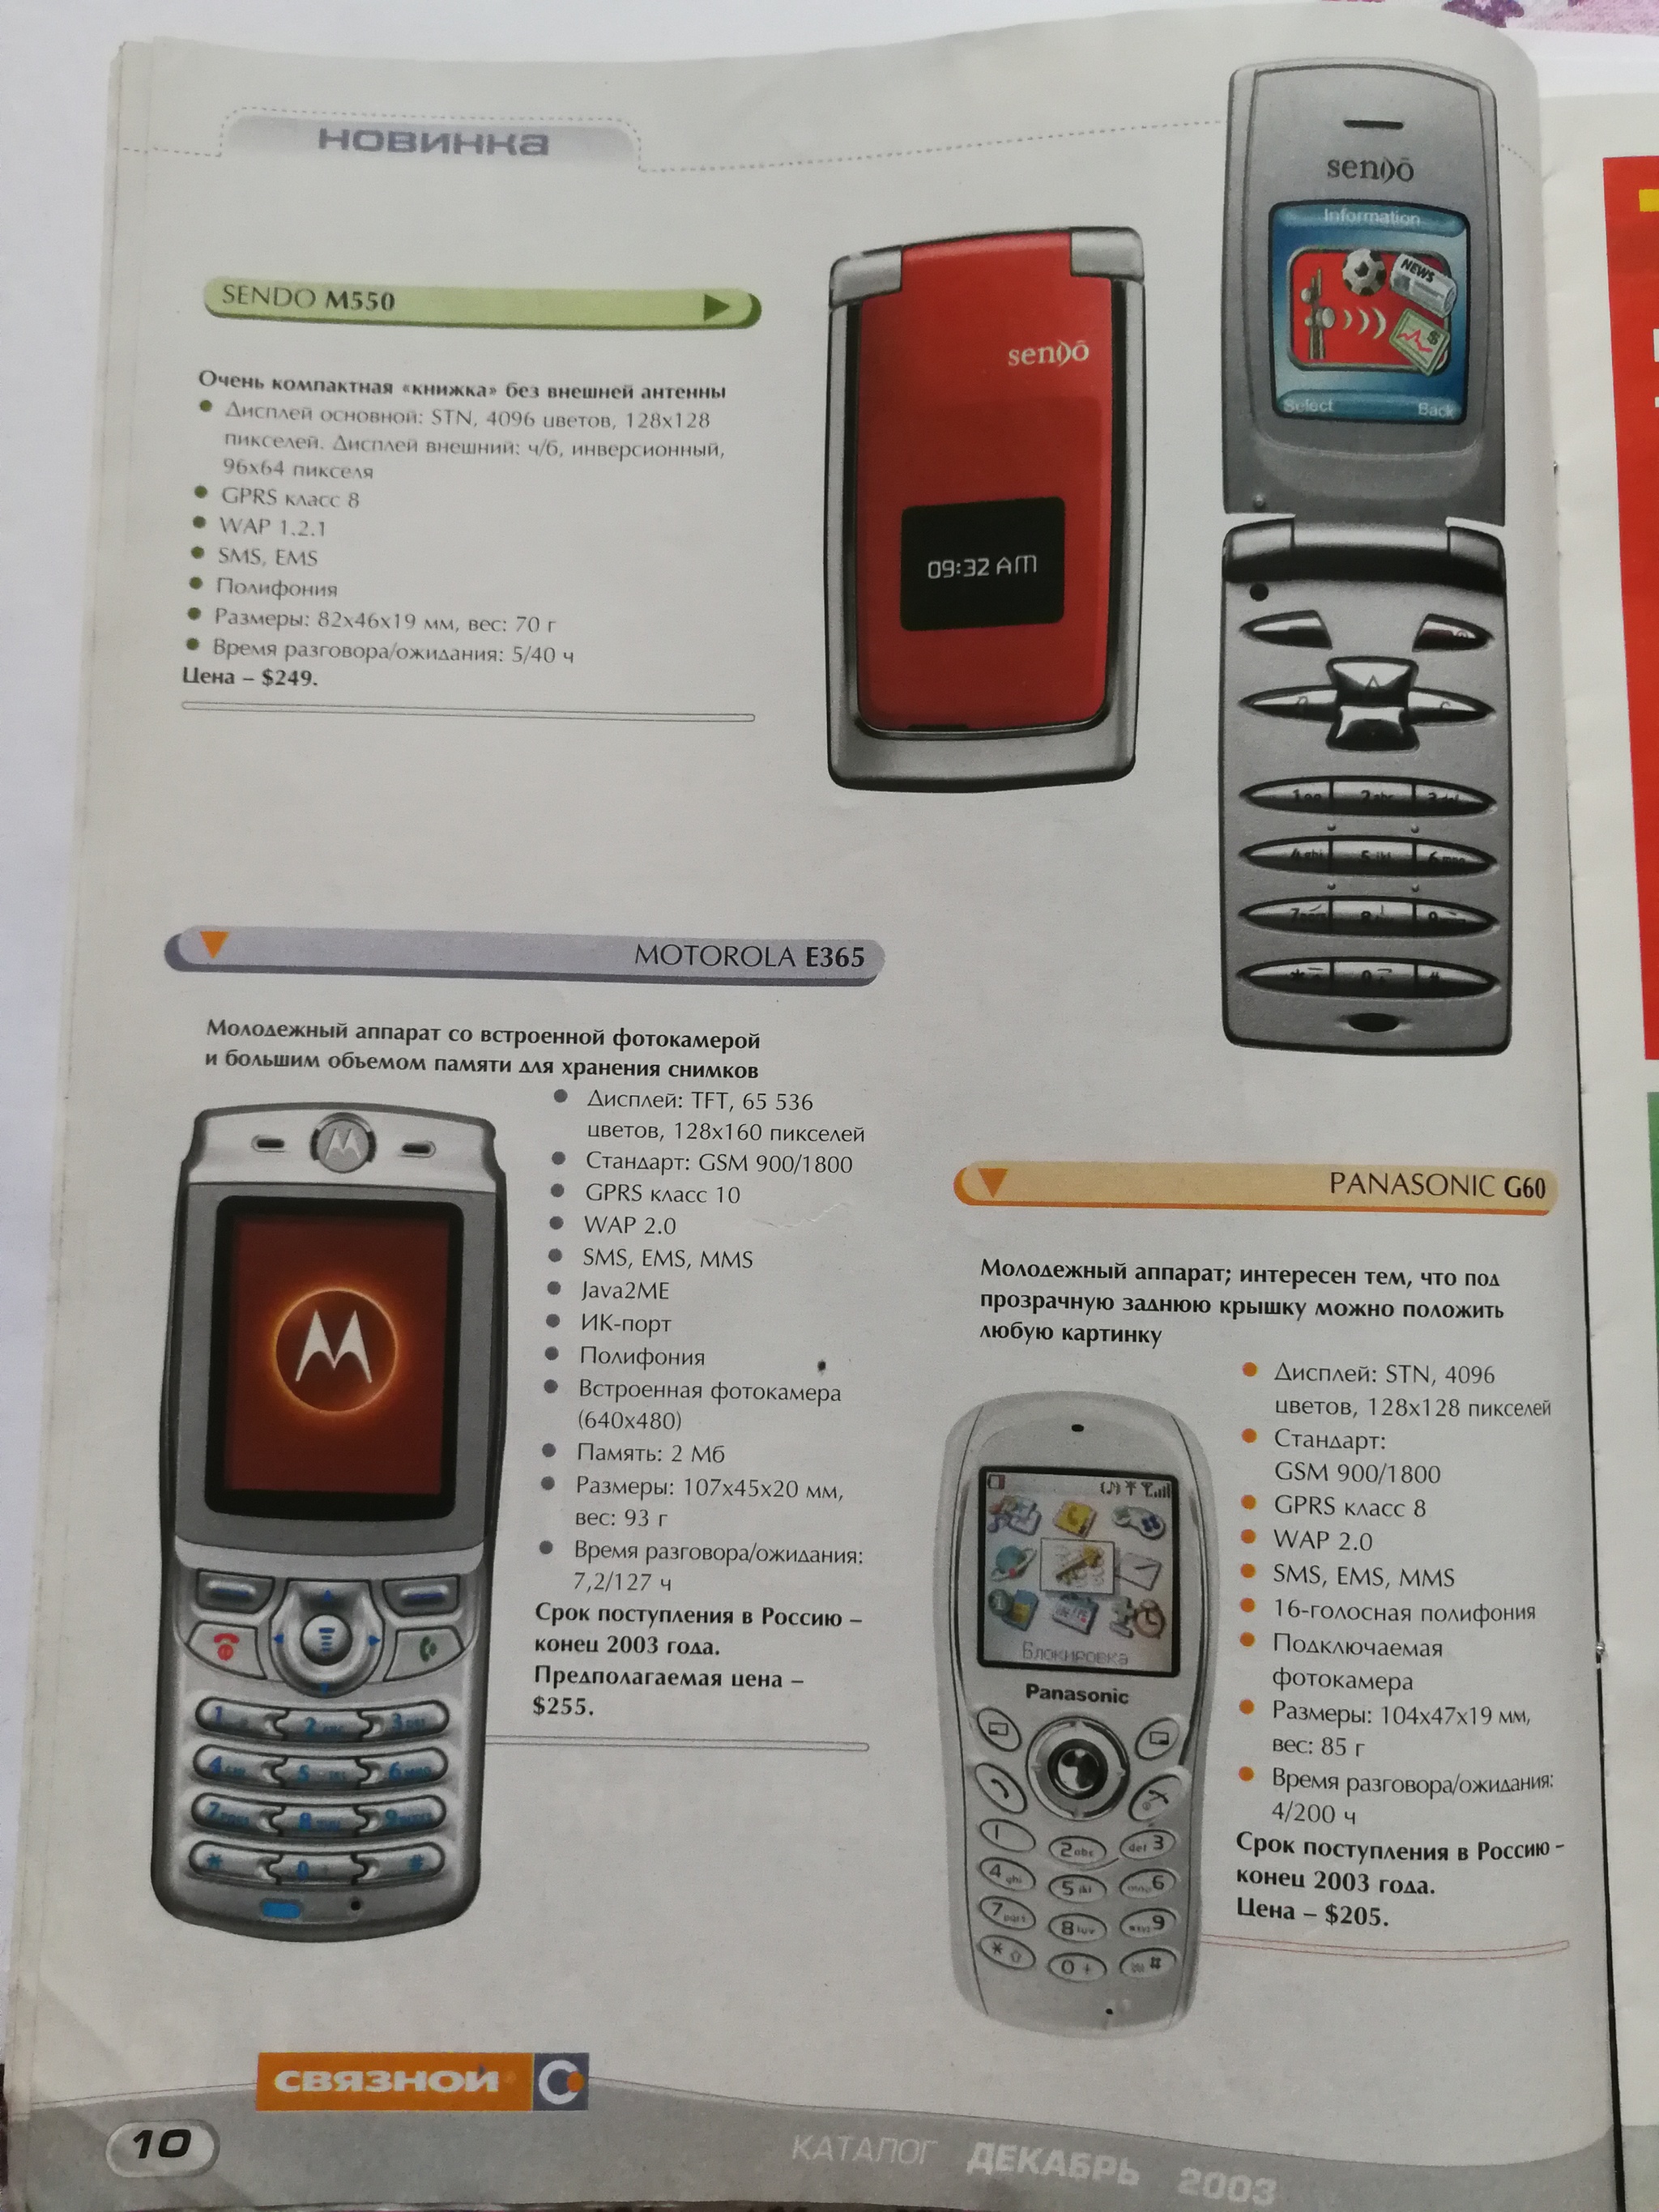 Каталог телефонов 2003 год